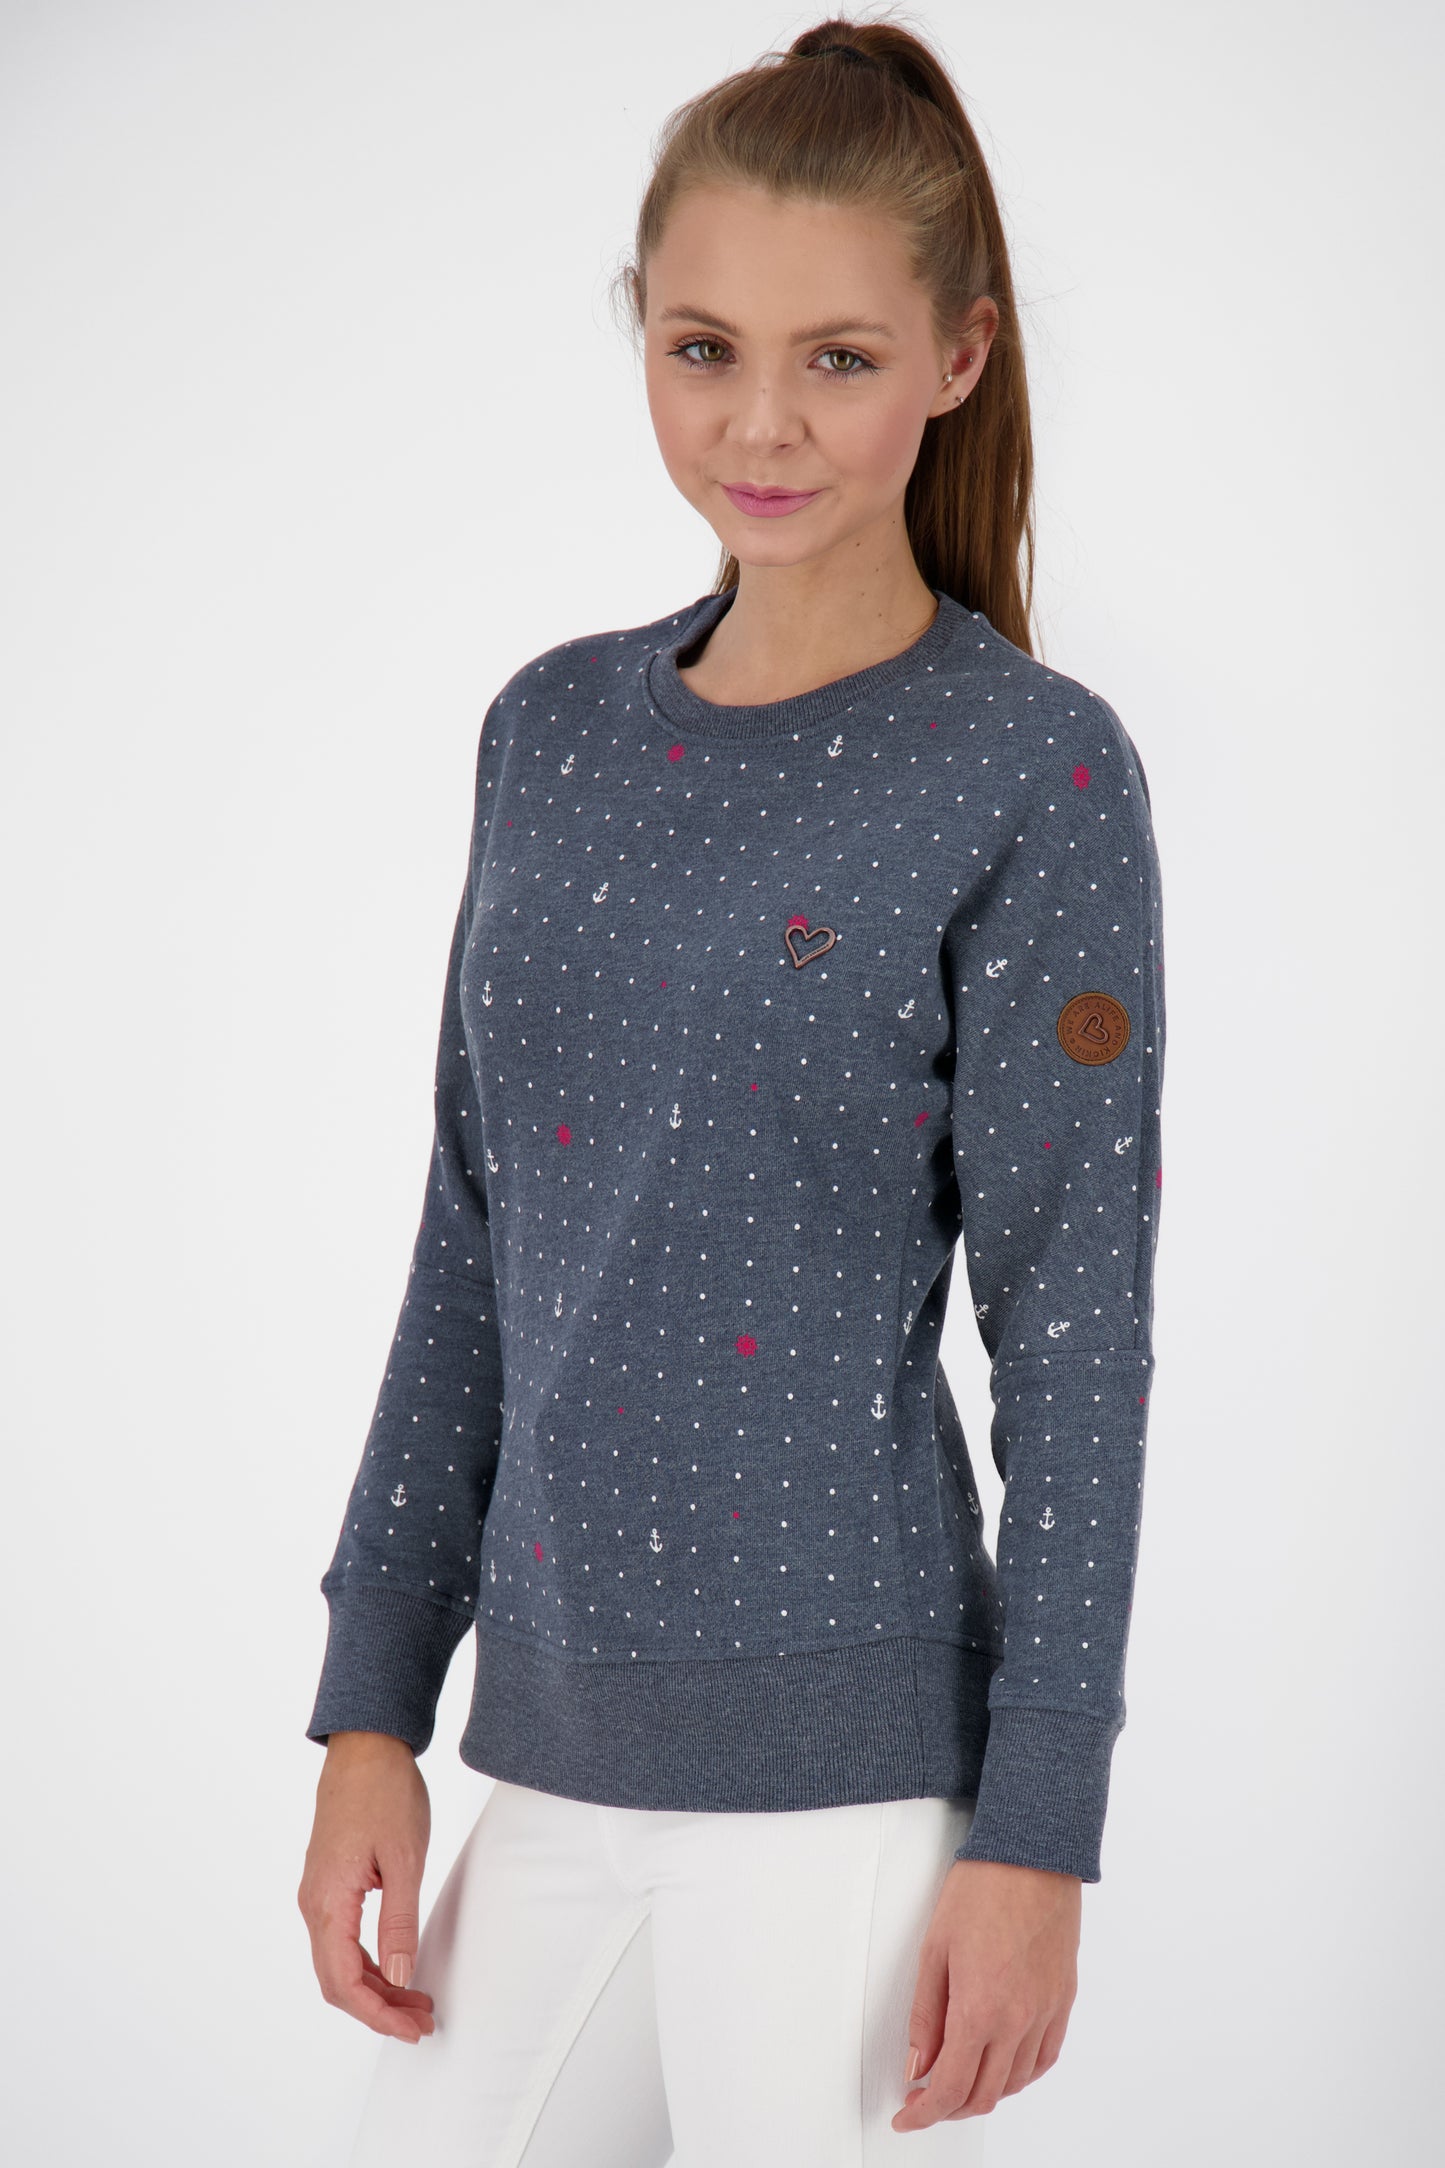 Mustergültiger Damensweater DarlaAK für ein entspanntes Outfit Dunkelblau